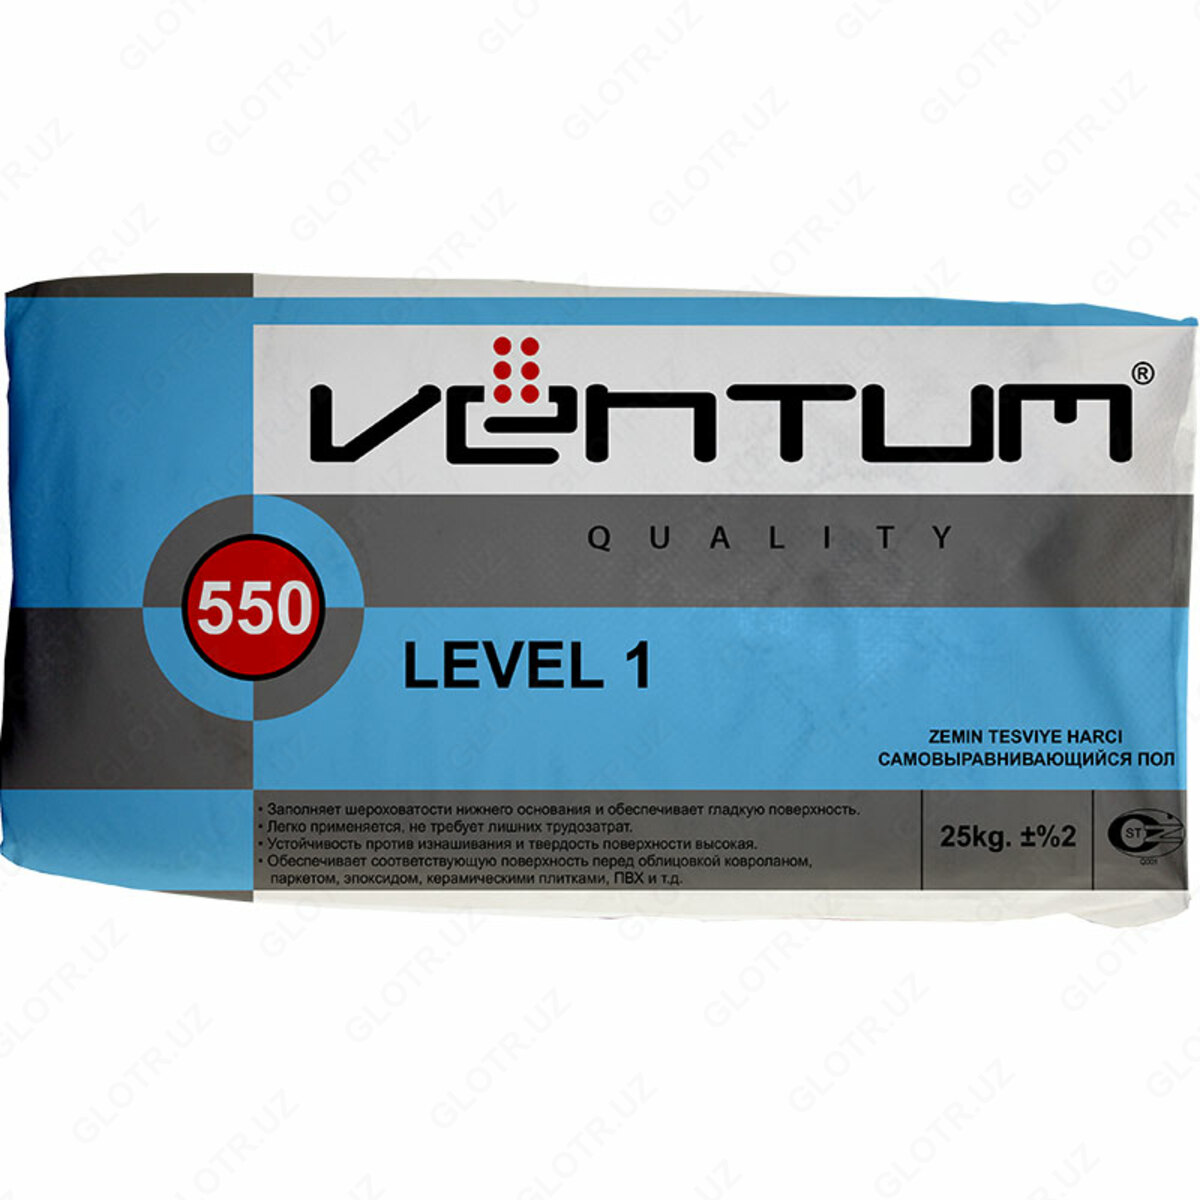 Level полы. Наливной пол - "Ventum" level1 - 25кг. Наливной пол - "Ventum" Level 1-550. Ventum 550. Ventum 550 наливной пол 25кг.